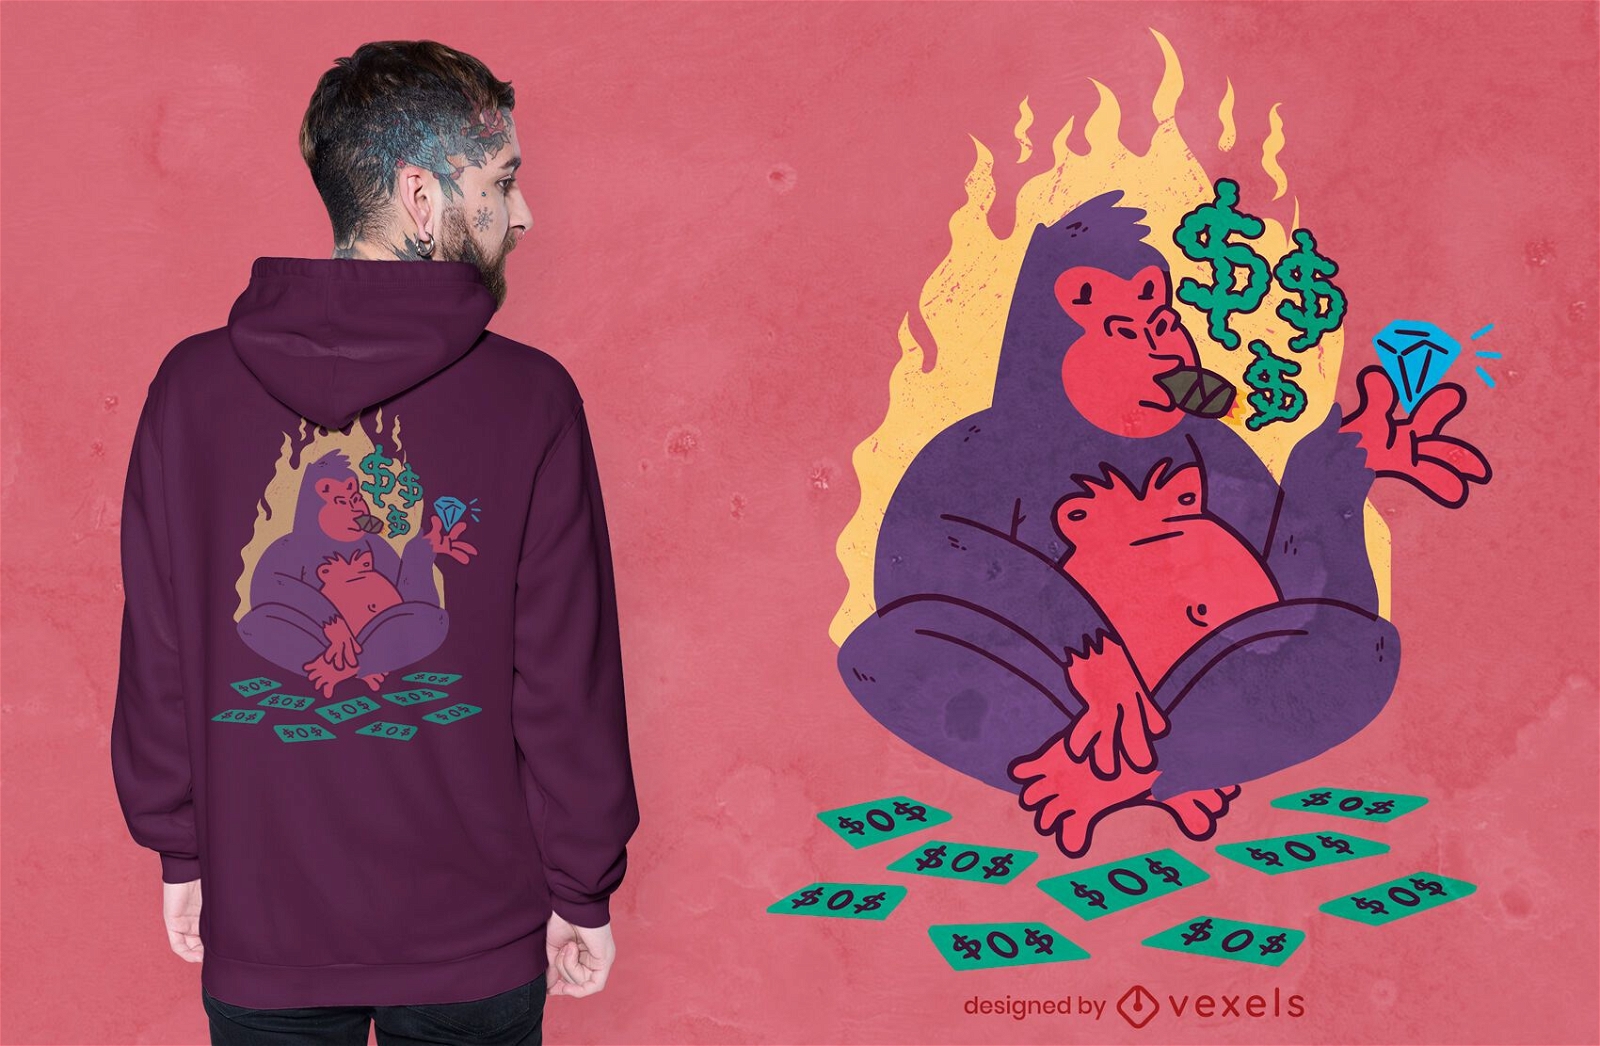 Rich gorilla character t-shirt design